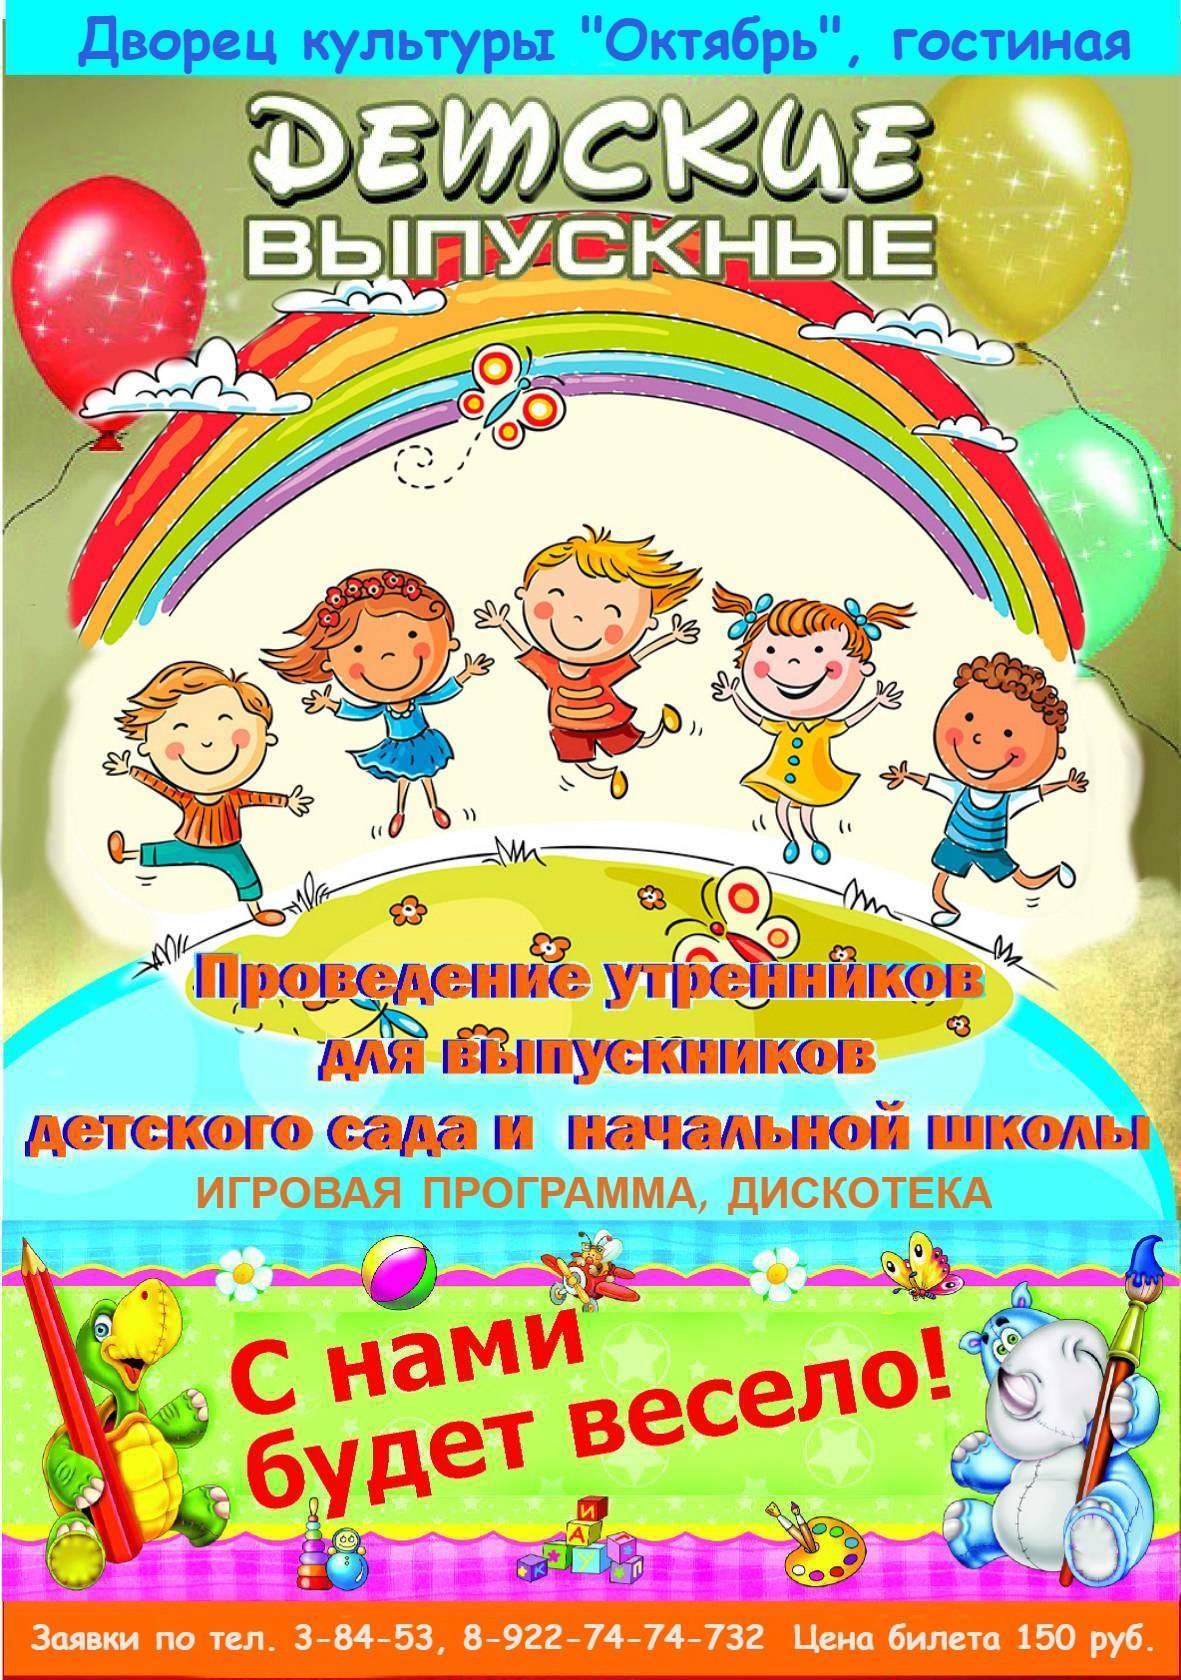 Дистанционный выпускной 2020 в детском саду - olimpiada.melodinka